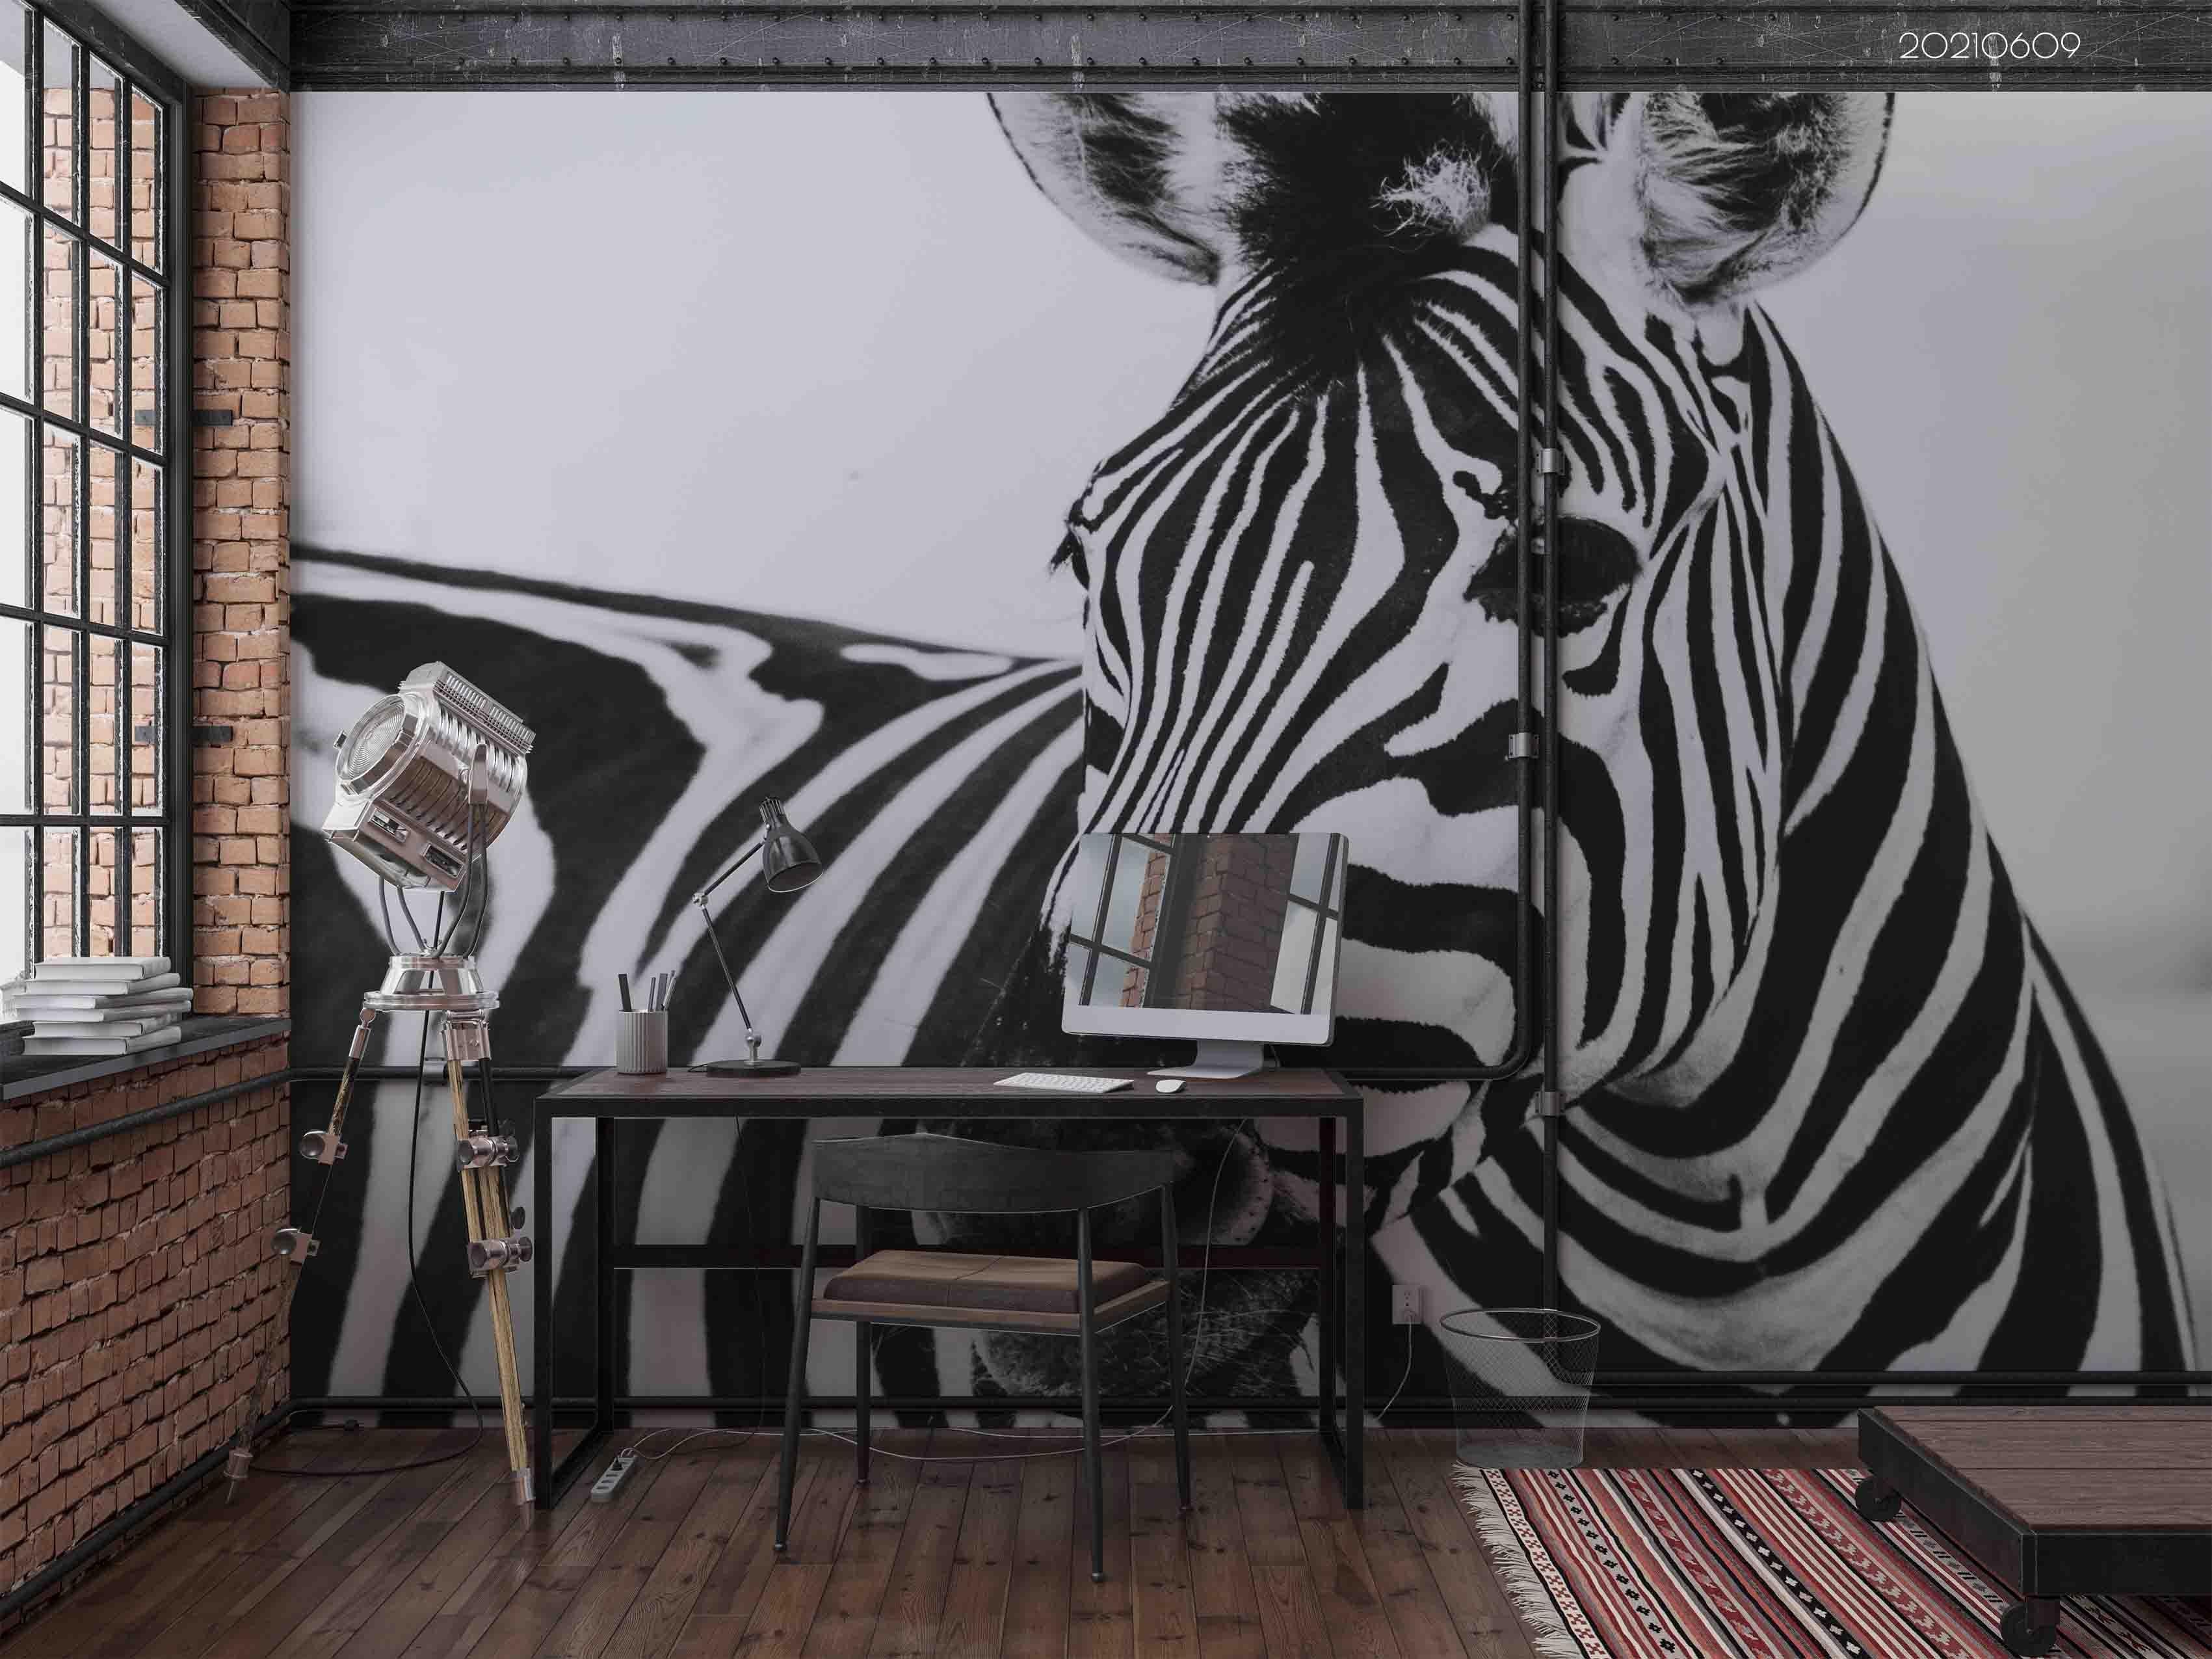 3D  Africa Animal Zebra Wall Mural Wallpaper SWW1670- Jess Art Decoration